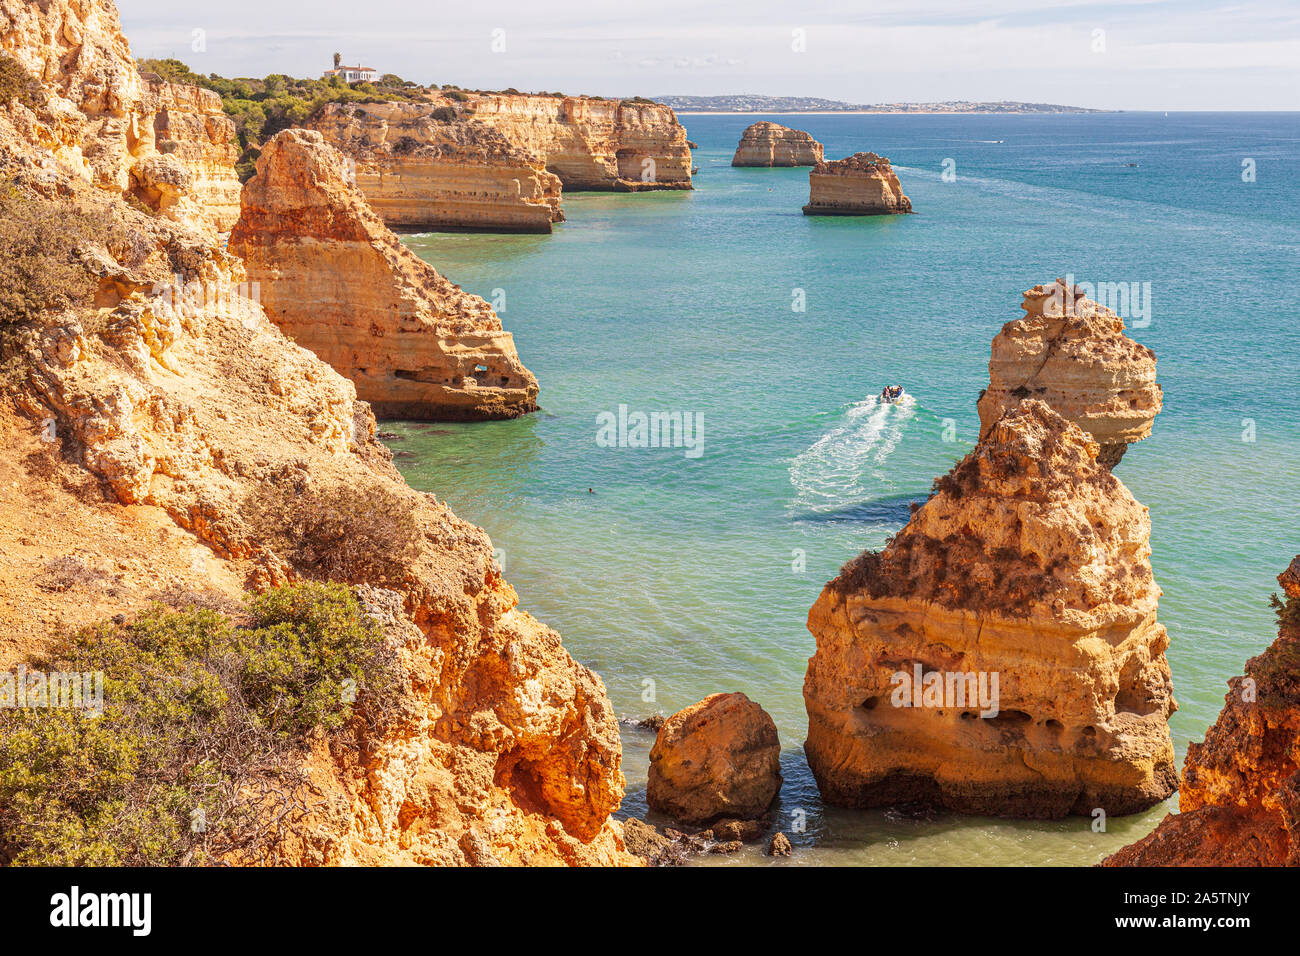 Praia da Marinha, robusto costa rocciosa di arenaria, formazioni rocciose nel mare, Algarve, PORTOGALLO Foto Stock